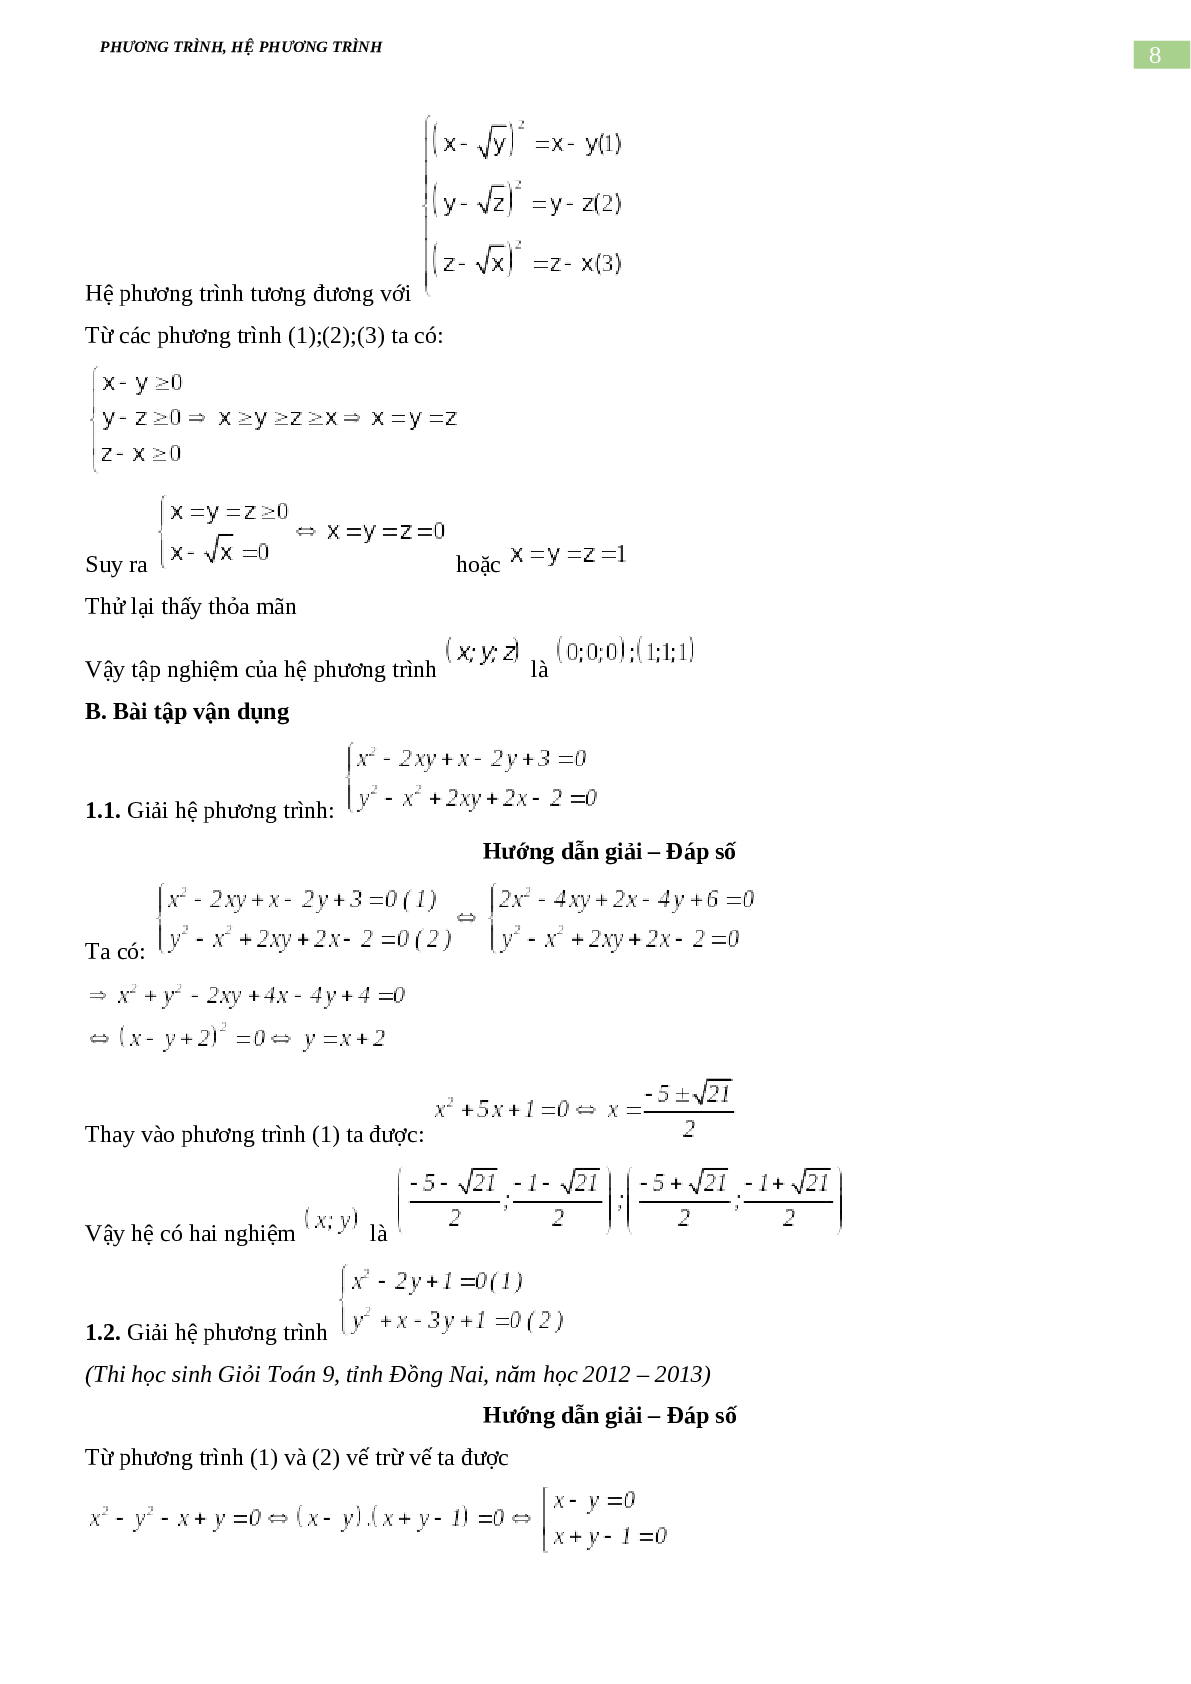 Bài tập về phương trình, hệ phương trình, bất phương trình không mẫu mực có đáp án, chọn lọc (trang 8)